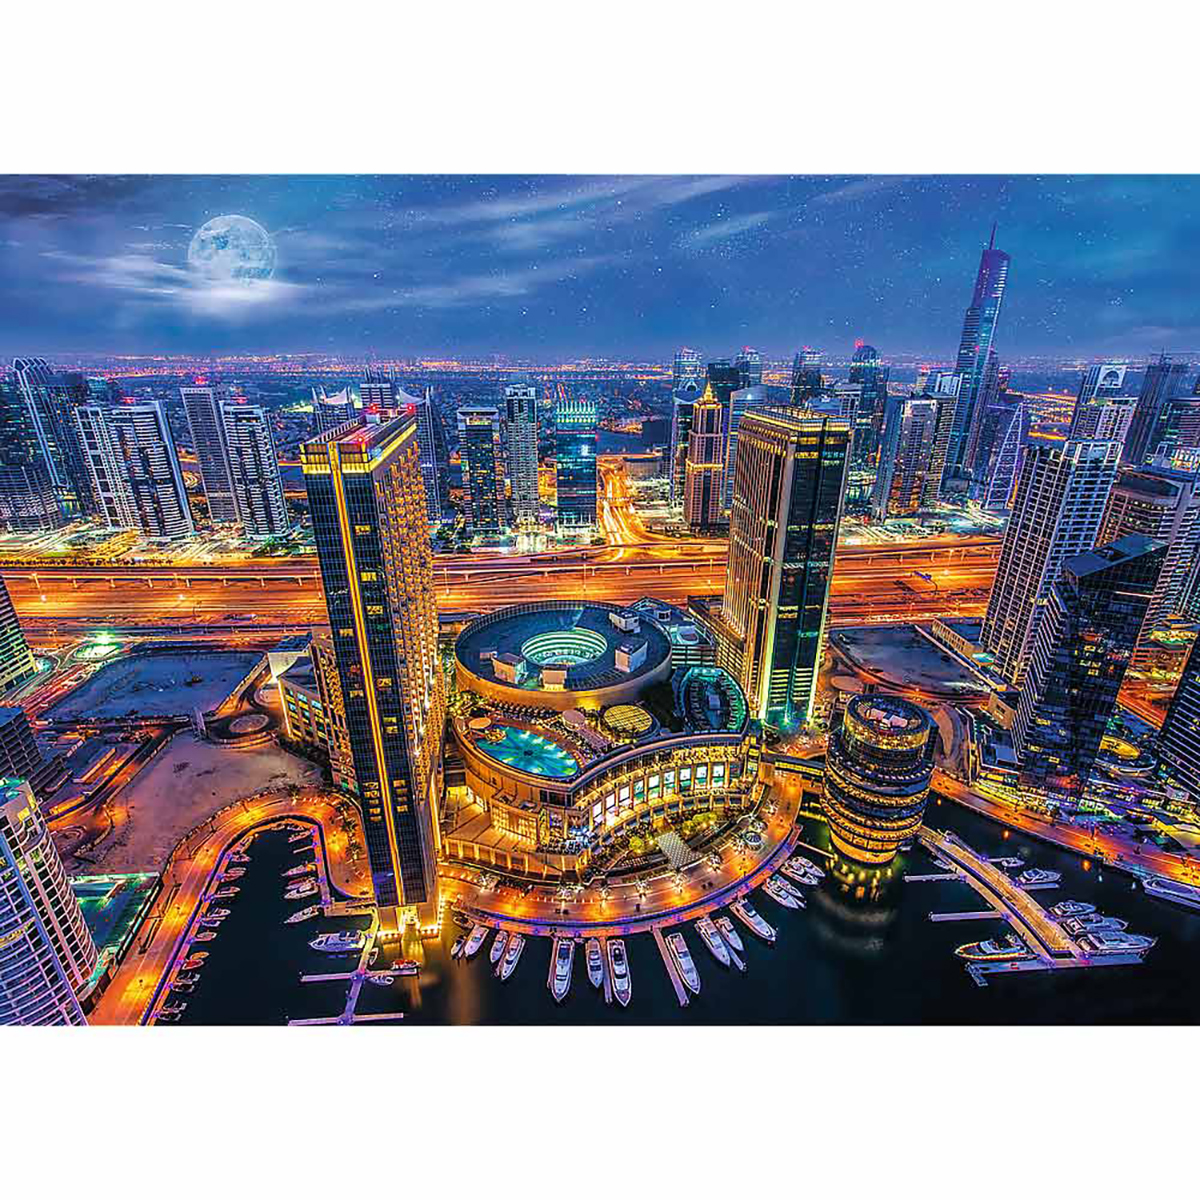 TREFL Lichter Dubai Puzzle von